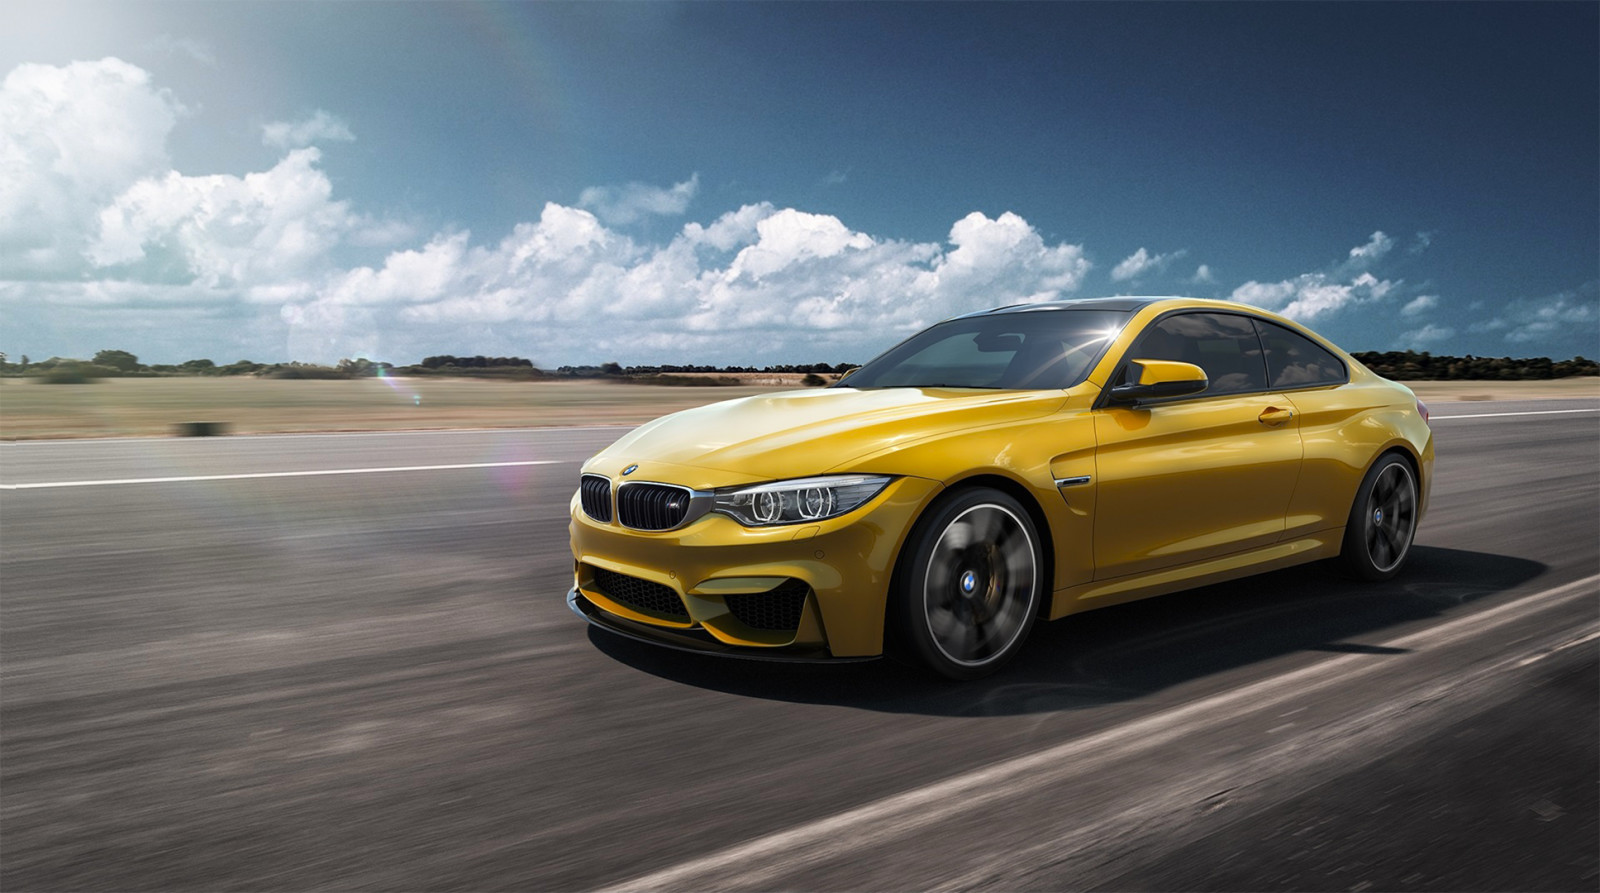 สีเหลือง, รถยนต์, BMW, ความเร็ว, F82, เยอรมัน, ด้านหน้า